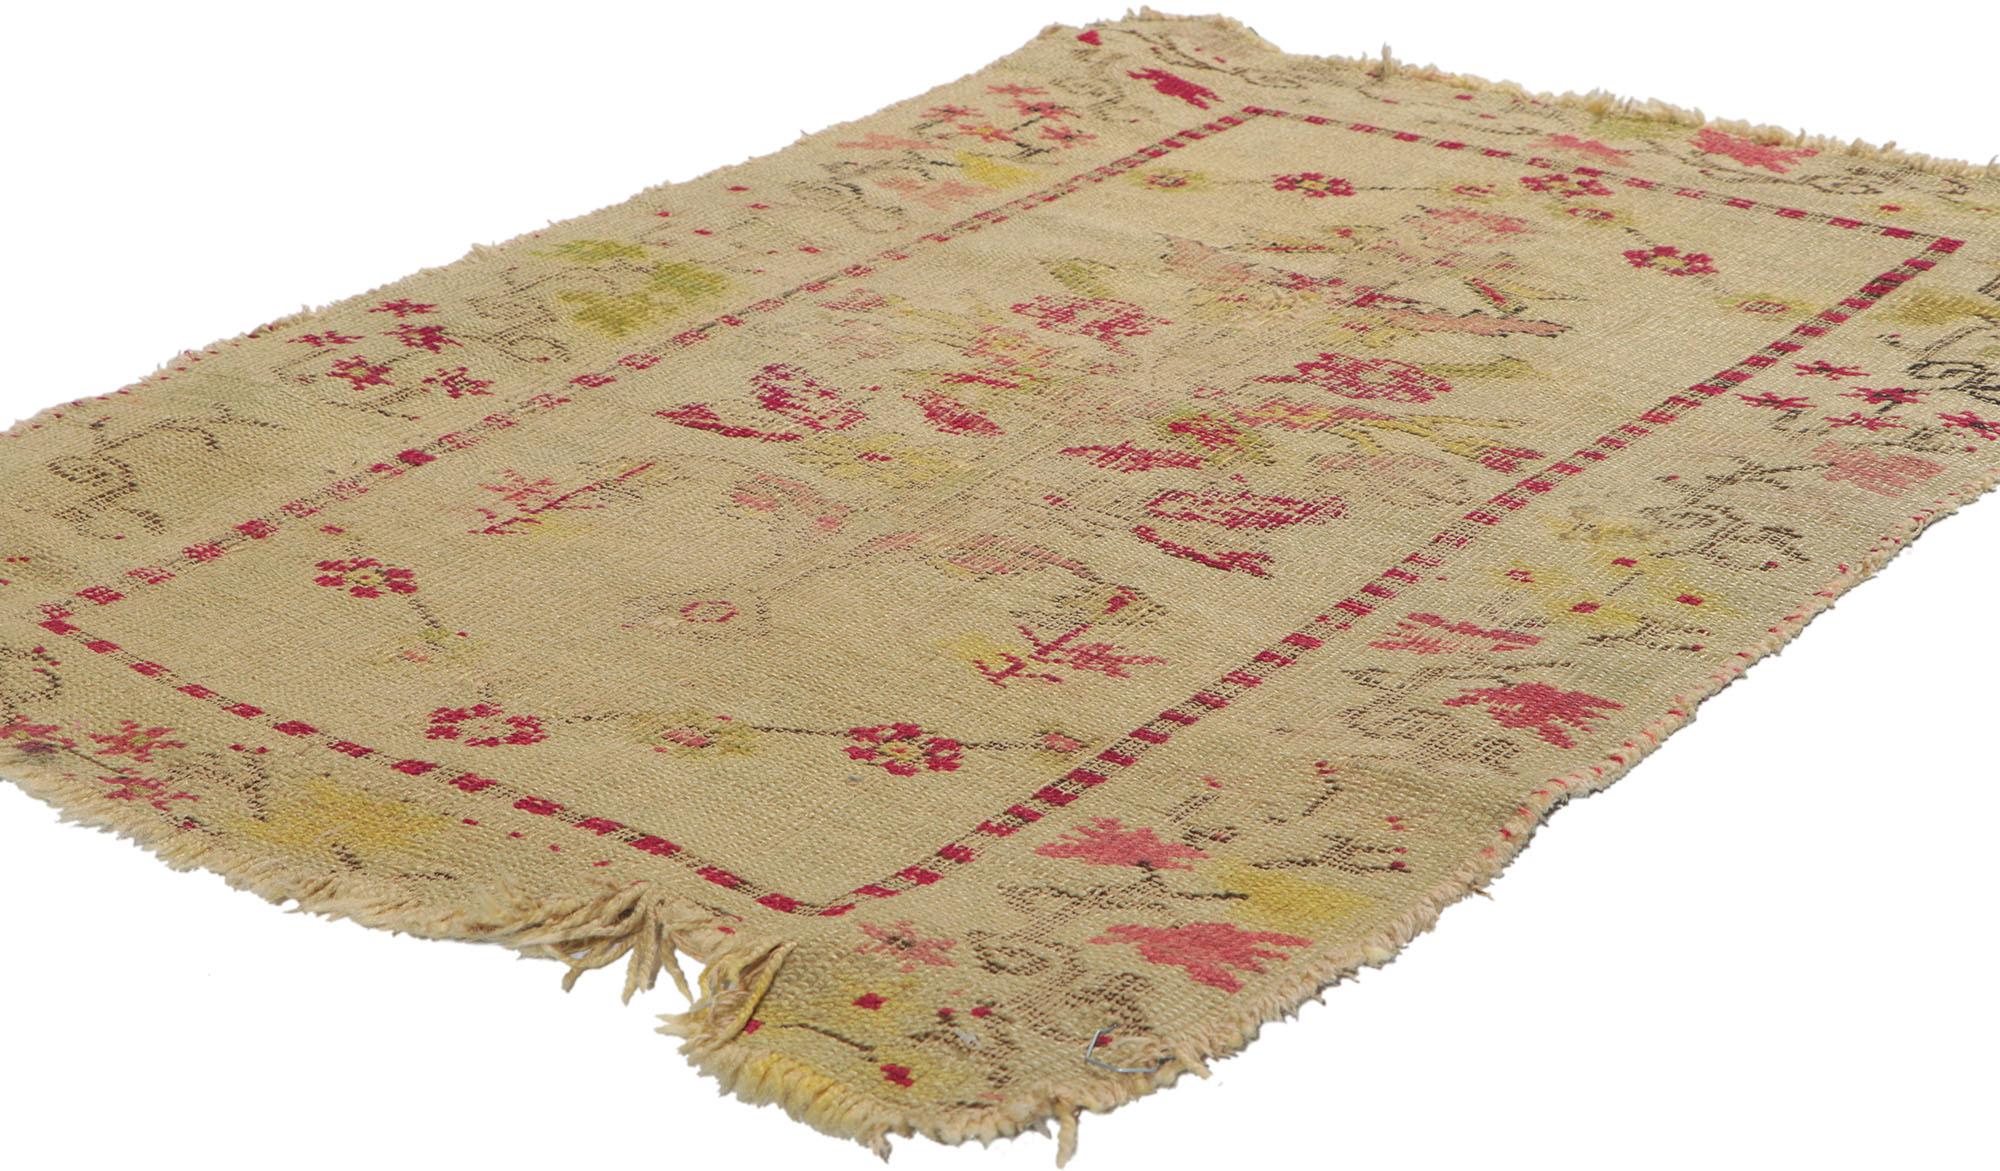 71041, ancien tapis d'accent turc Oushak vieilli. Ce tapis d'appoint turc Oushak parfaitement usé et vieilli présente des motifs floraux stylisés sur une base de couleur neutre. Une simple bande de garde rouge encadre le champ central qui renferme